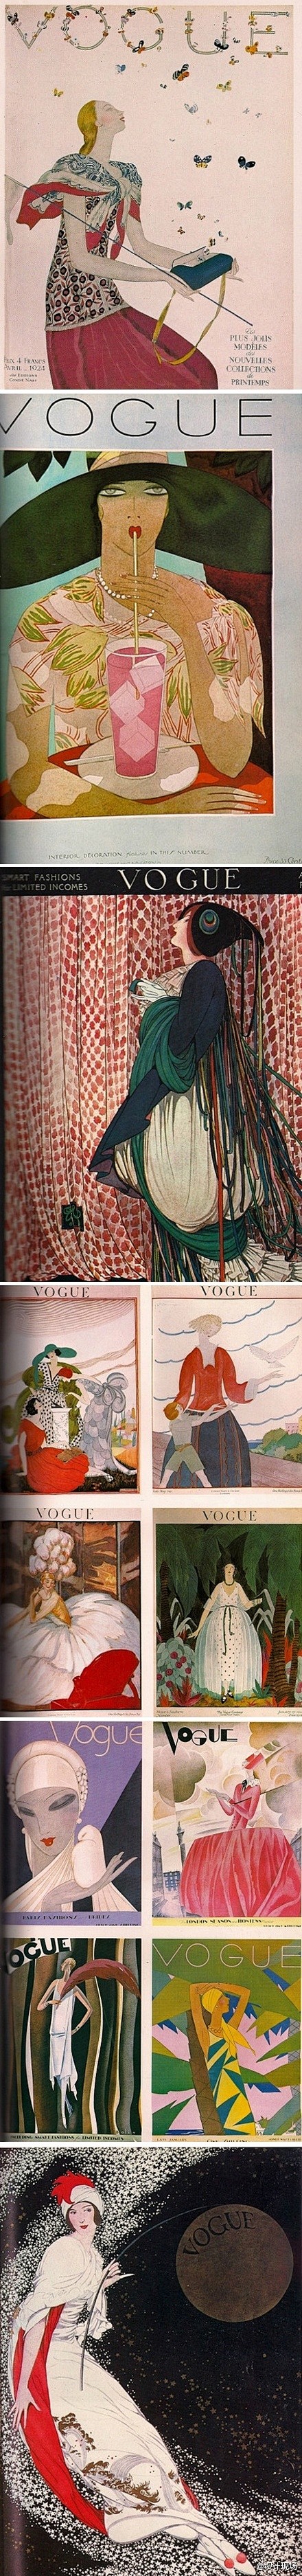 上世纪20年代vogue杂志的手绘封面